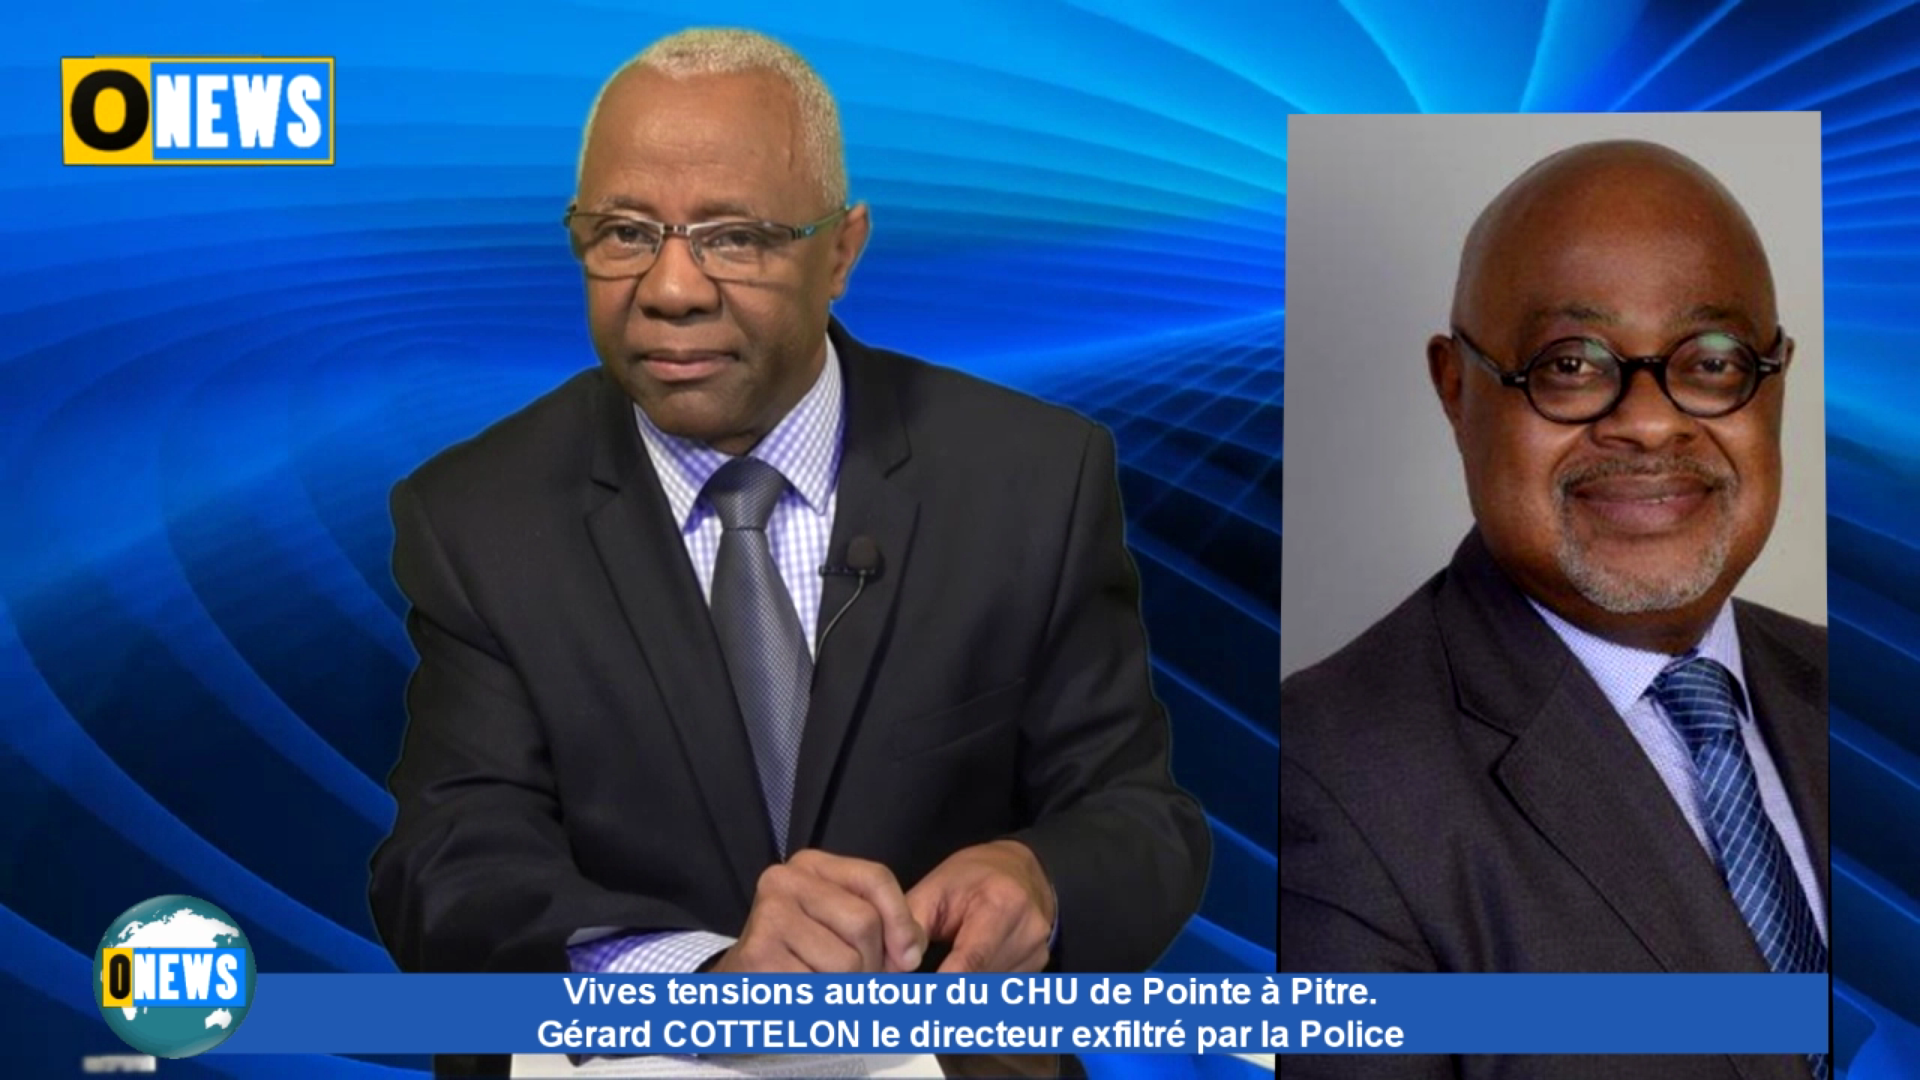 Guadeloupe. Tensions autour du CHU. Gérard COTTELON le directeur exfiltré par la police